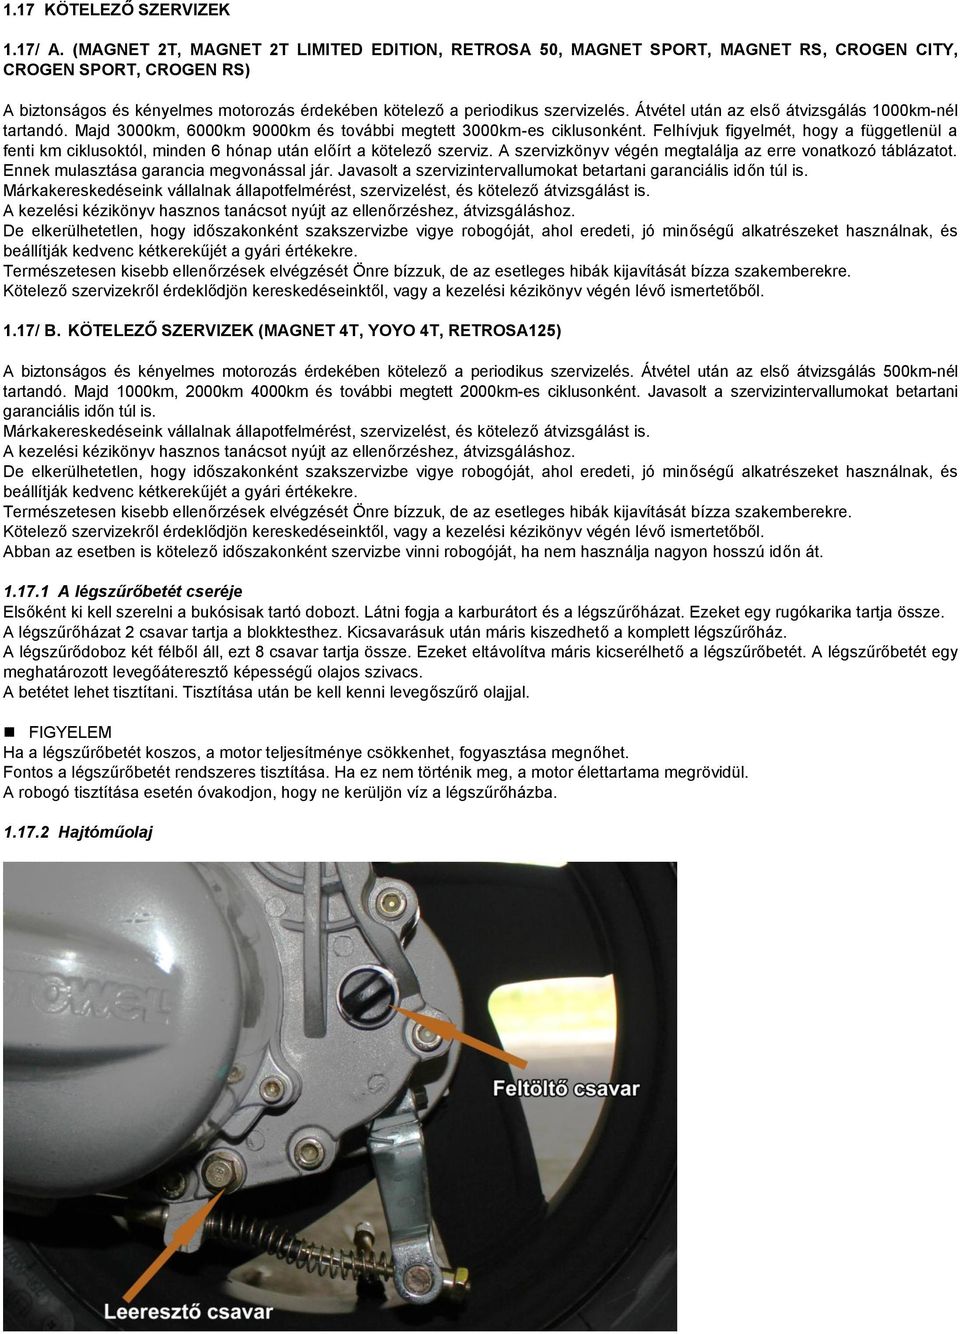 MOTOWELL Használati utasítás - PDF Ingyenes letöltés